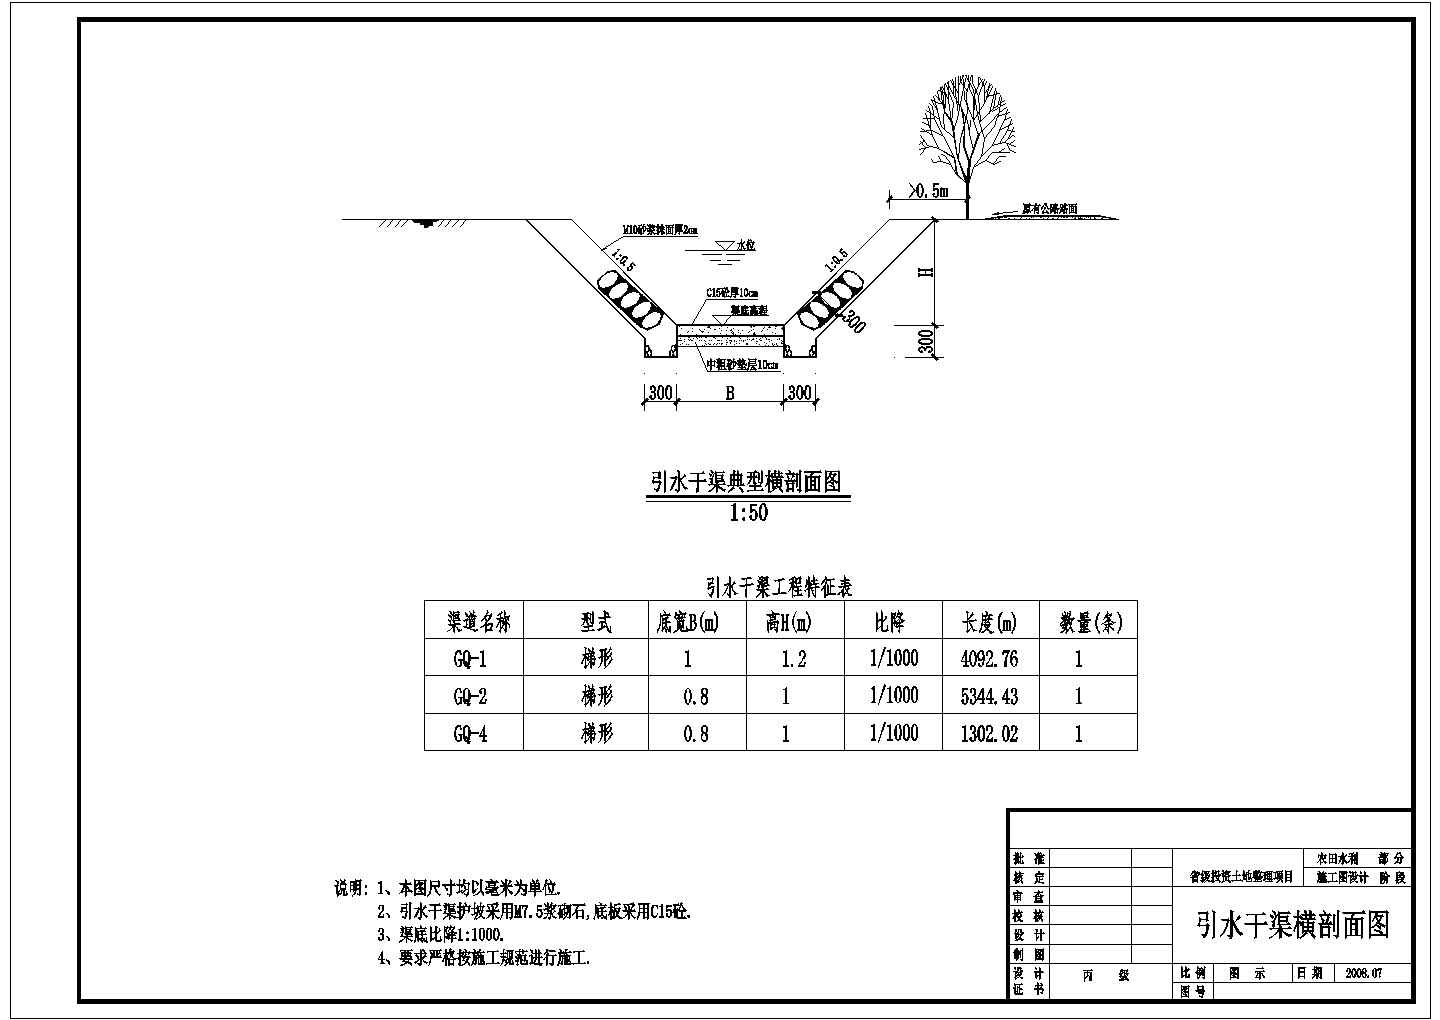 水利工程_省级投资土地整理项目施工图设计CAD图